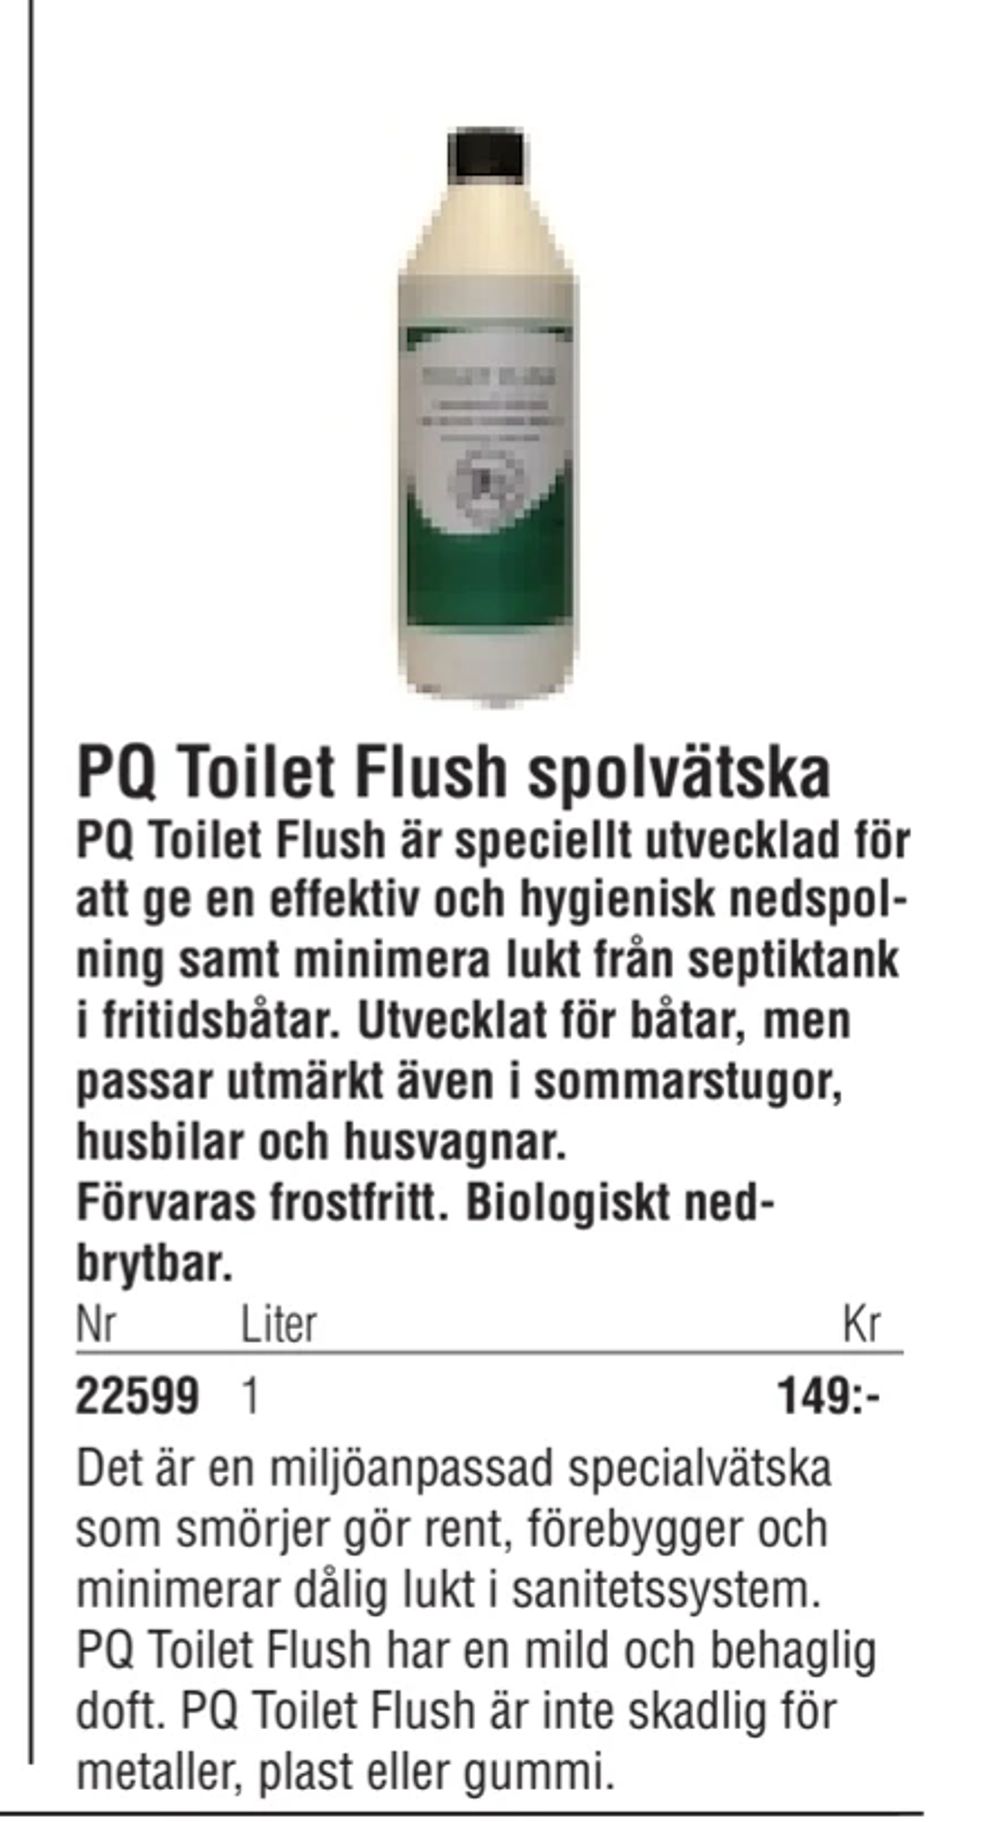 Erbjudanden på PQ Toilet Flush spolvätska från Erlandsons Brygga för 149 kr